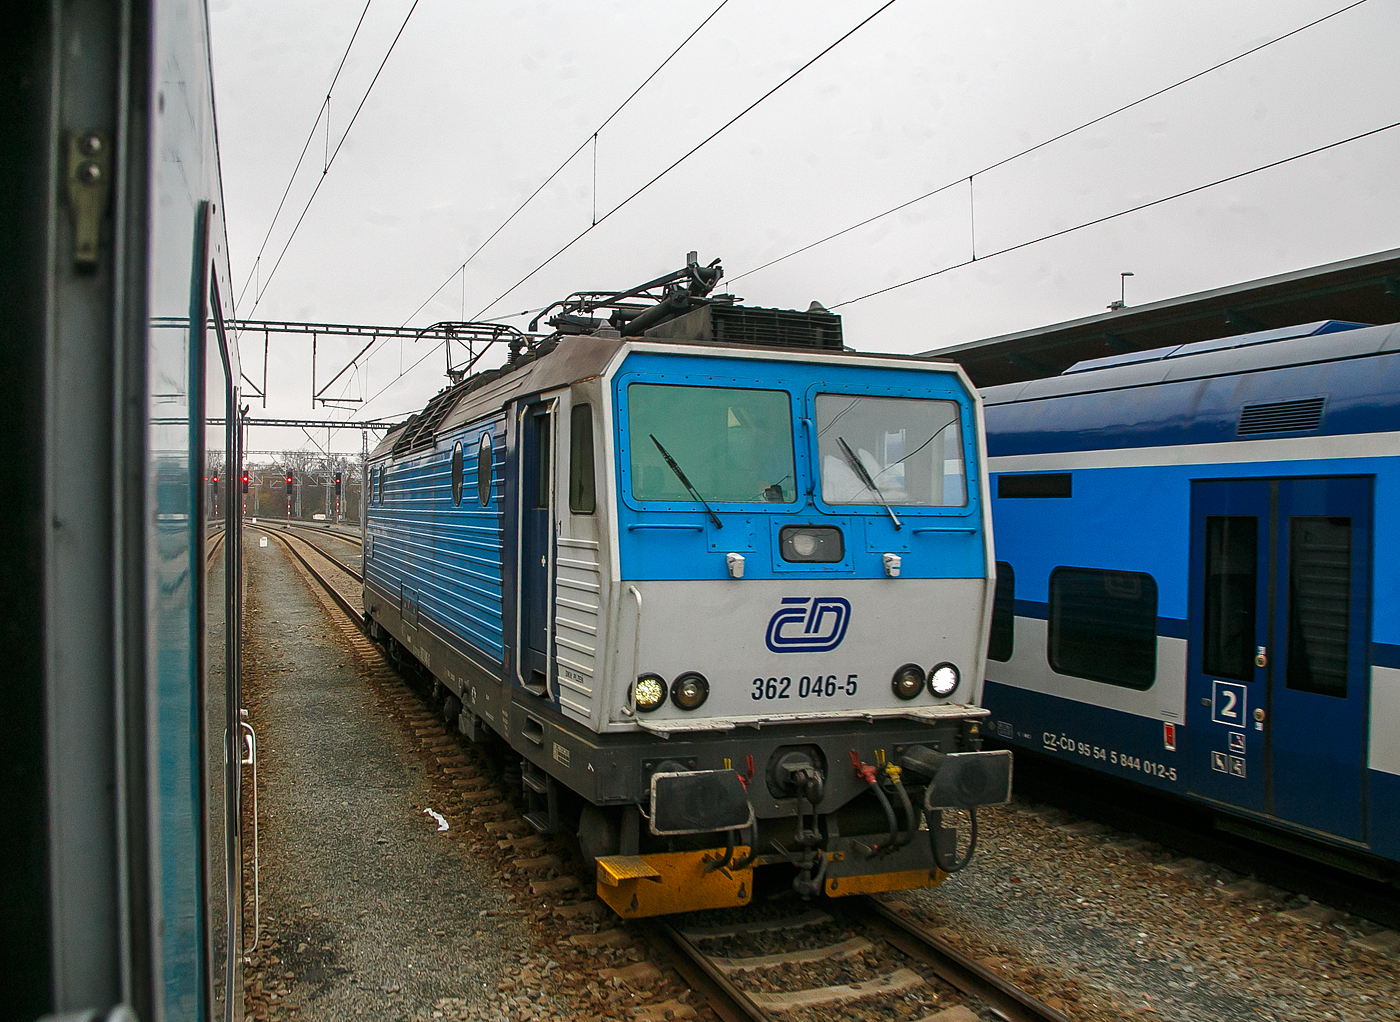 Die ČD 362 046-5 (CZ-ČD 91 54 7 362 046-5) der České dráhy (Tschechische Bahnen) rangiert am 22.11.2022 im Hauptbahnhof Pilsen (Plzeň hlavní nádraží), Zuvor hatte sie einen EX-Zug nach München (alex RE 25) von Prag nach Pilsen gezogen, ab hier dann die alexa 223 065 den Zug übernommen und zieht diesen bis Regensburg, wo wiederum eine 183er den Zug übernimmt.

Die Baureihe ČD 362 entstand aus Umbauten der 1984 bis 1990 von Škoda in Plzeň (Typ Škoda 69E) gebauten ČSD Baureihe ES 499.1 (ab 1988 BR 363). Die Loks sind elektrische Zweisystemlokomotiven für den universellen Einsatz. Sie sind sowohl im 3-kV-Gleichstromsystem im Norden und Osten wie auch im 25-kV-Wechselstromsystem im Westen und Süden der ehemaligen Tschechoslowakei einsetzbar.

Bereits 1990 wurde als Baureihe 362 erstmals eine 140 km/h schnelle Weiterentwicklung der ES 499.1/363 vorgestellt, wegen finanzieller Schwierigkeiten wurde auf eine Bestellung verzichtet. So wurden in den Jahren 1993/1994 und 2000/2001 Loks der BR 363 durch Anhebung der Höchstgeschwindigkeit von 120 auf 140 km/h zur BR 362 umgebaut. Dafür wurden die Drehgestelle mit solchen der Baureihe 162 ausgetauscht.

TECHNISCHE DATEN:
Spurweite: 1.435 mm (Normalspur)
Achsformel: Bo’Bo’
Länge über Puffer:  16.800 mm
Höhe:  4.625 mm
Breite:  2.940 mm
Drehzapfenabstand:  8.300 mm
Dienstgewicht:  87 t
Höchstgeschwindigkeit:  140 km/h
Dauerleistung:  3.060 kW (25 kV~) / 3.480 kW (3 kV=)
Anfahrzugkraft:  258 kN
Stromsystem:  3 kV DC und 25 kV 50Hz AC
Anzahl der Fahrmotoren:  4 (Typ Al 4542 FiR)
Antrieb:  Škoda-Hohlwellenantrieb
Zugheizung:  3000 V
Steuerung:  Thyristor-Pulsumrichter
Kupplungstyp:  Schraubenkupplung